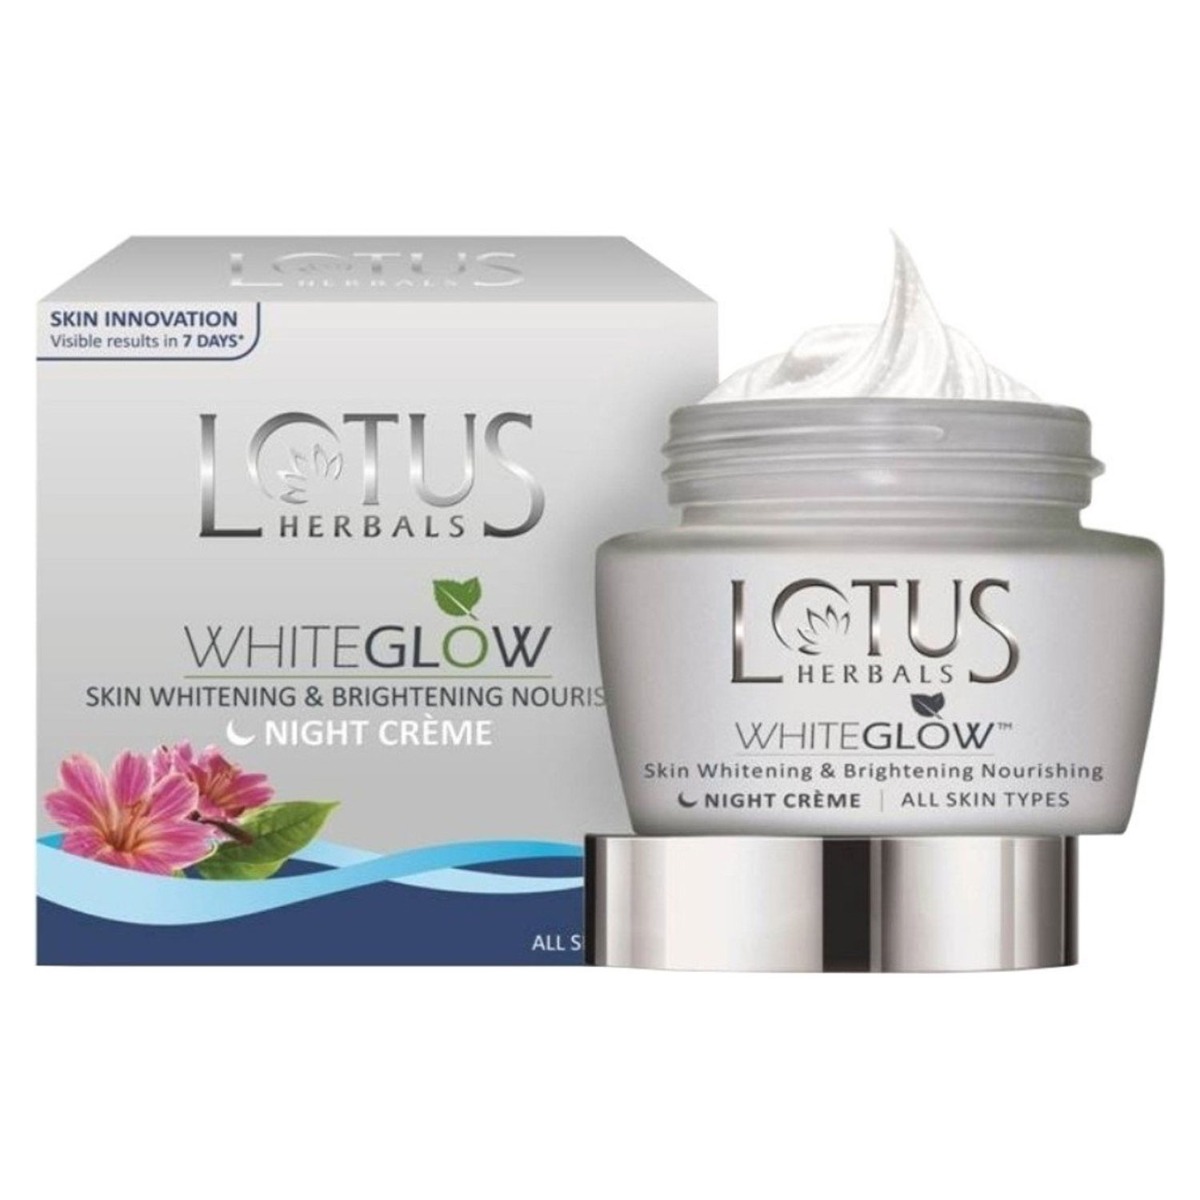 Lotus Herbals Whiteglow Skin Whitening and Brightening Nourishing Night Cream, 40gm